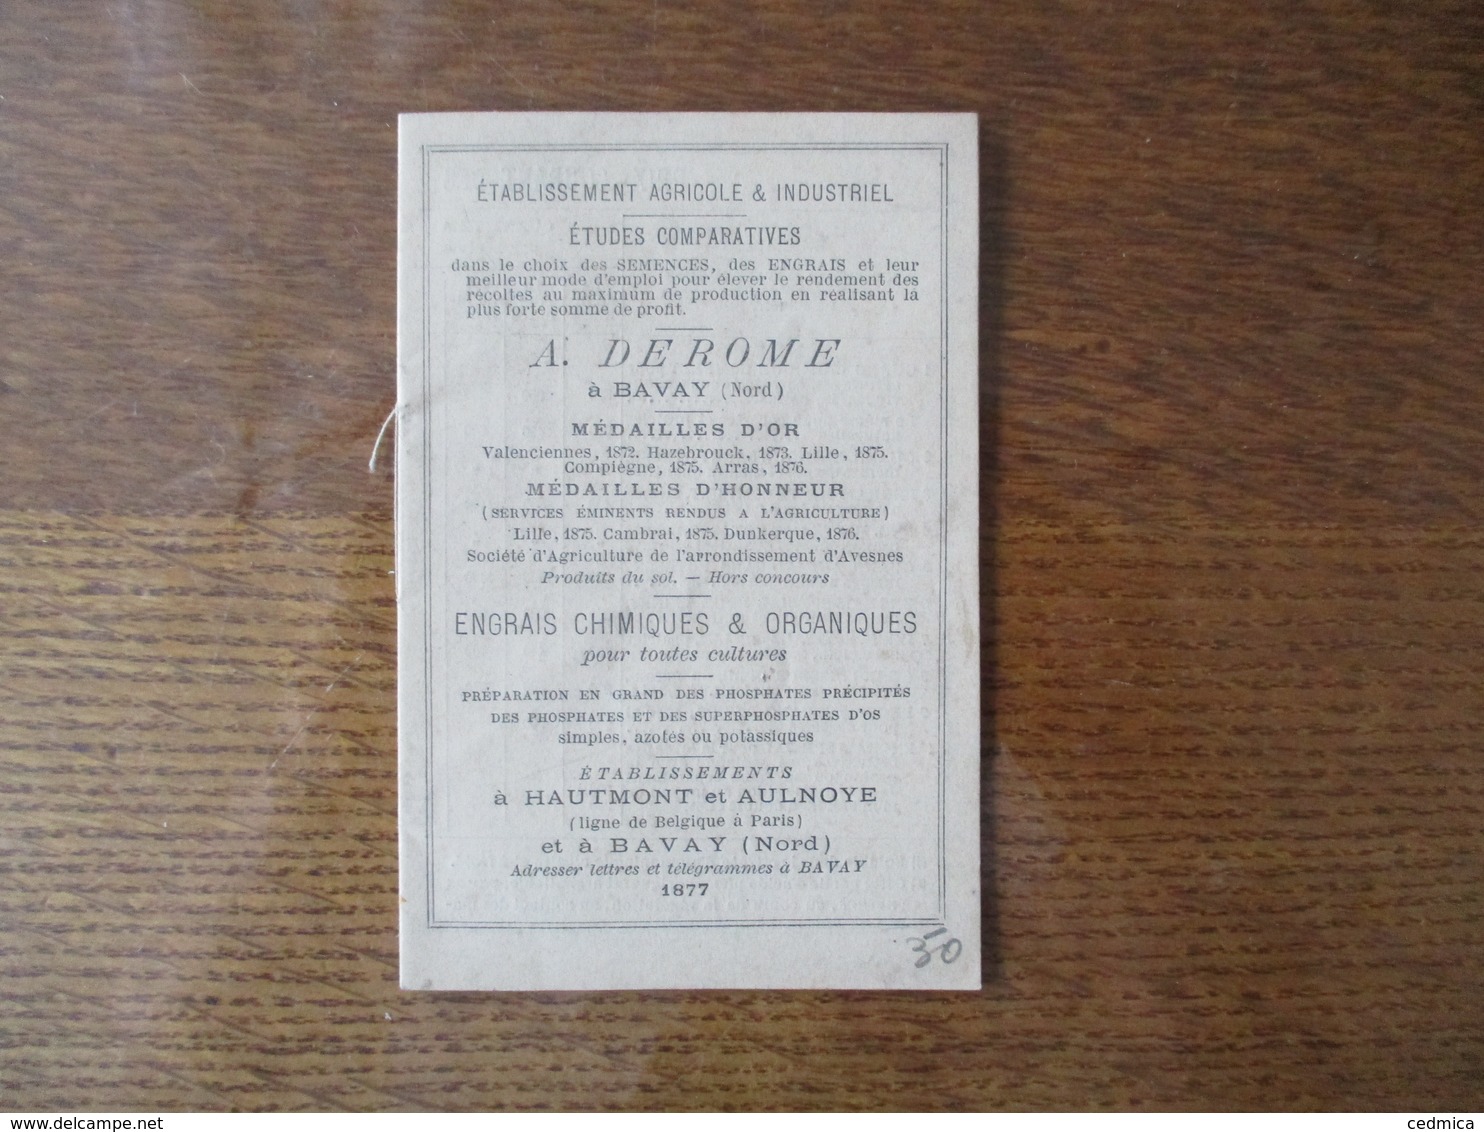 1877 A. DEROME A BAVAY ETABLISSEMENTS A HAUTMONT ET AULNOYE ENGRAIS CHIMIQUES ET ORGANIQUES 12 PAGES - Advertising